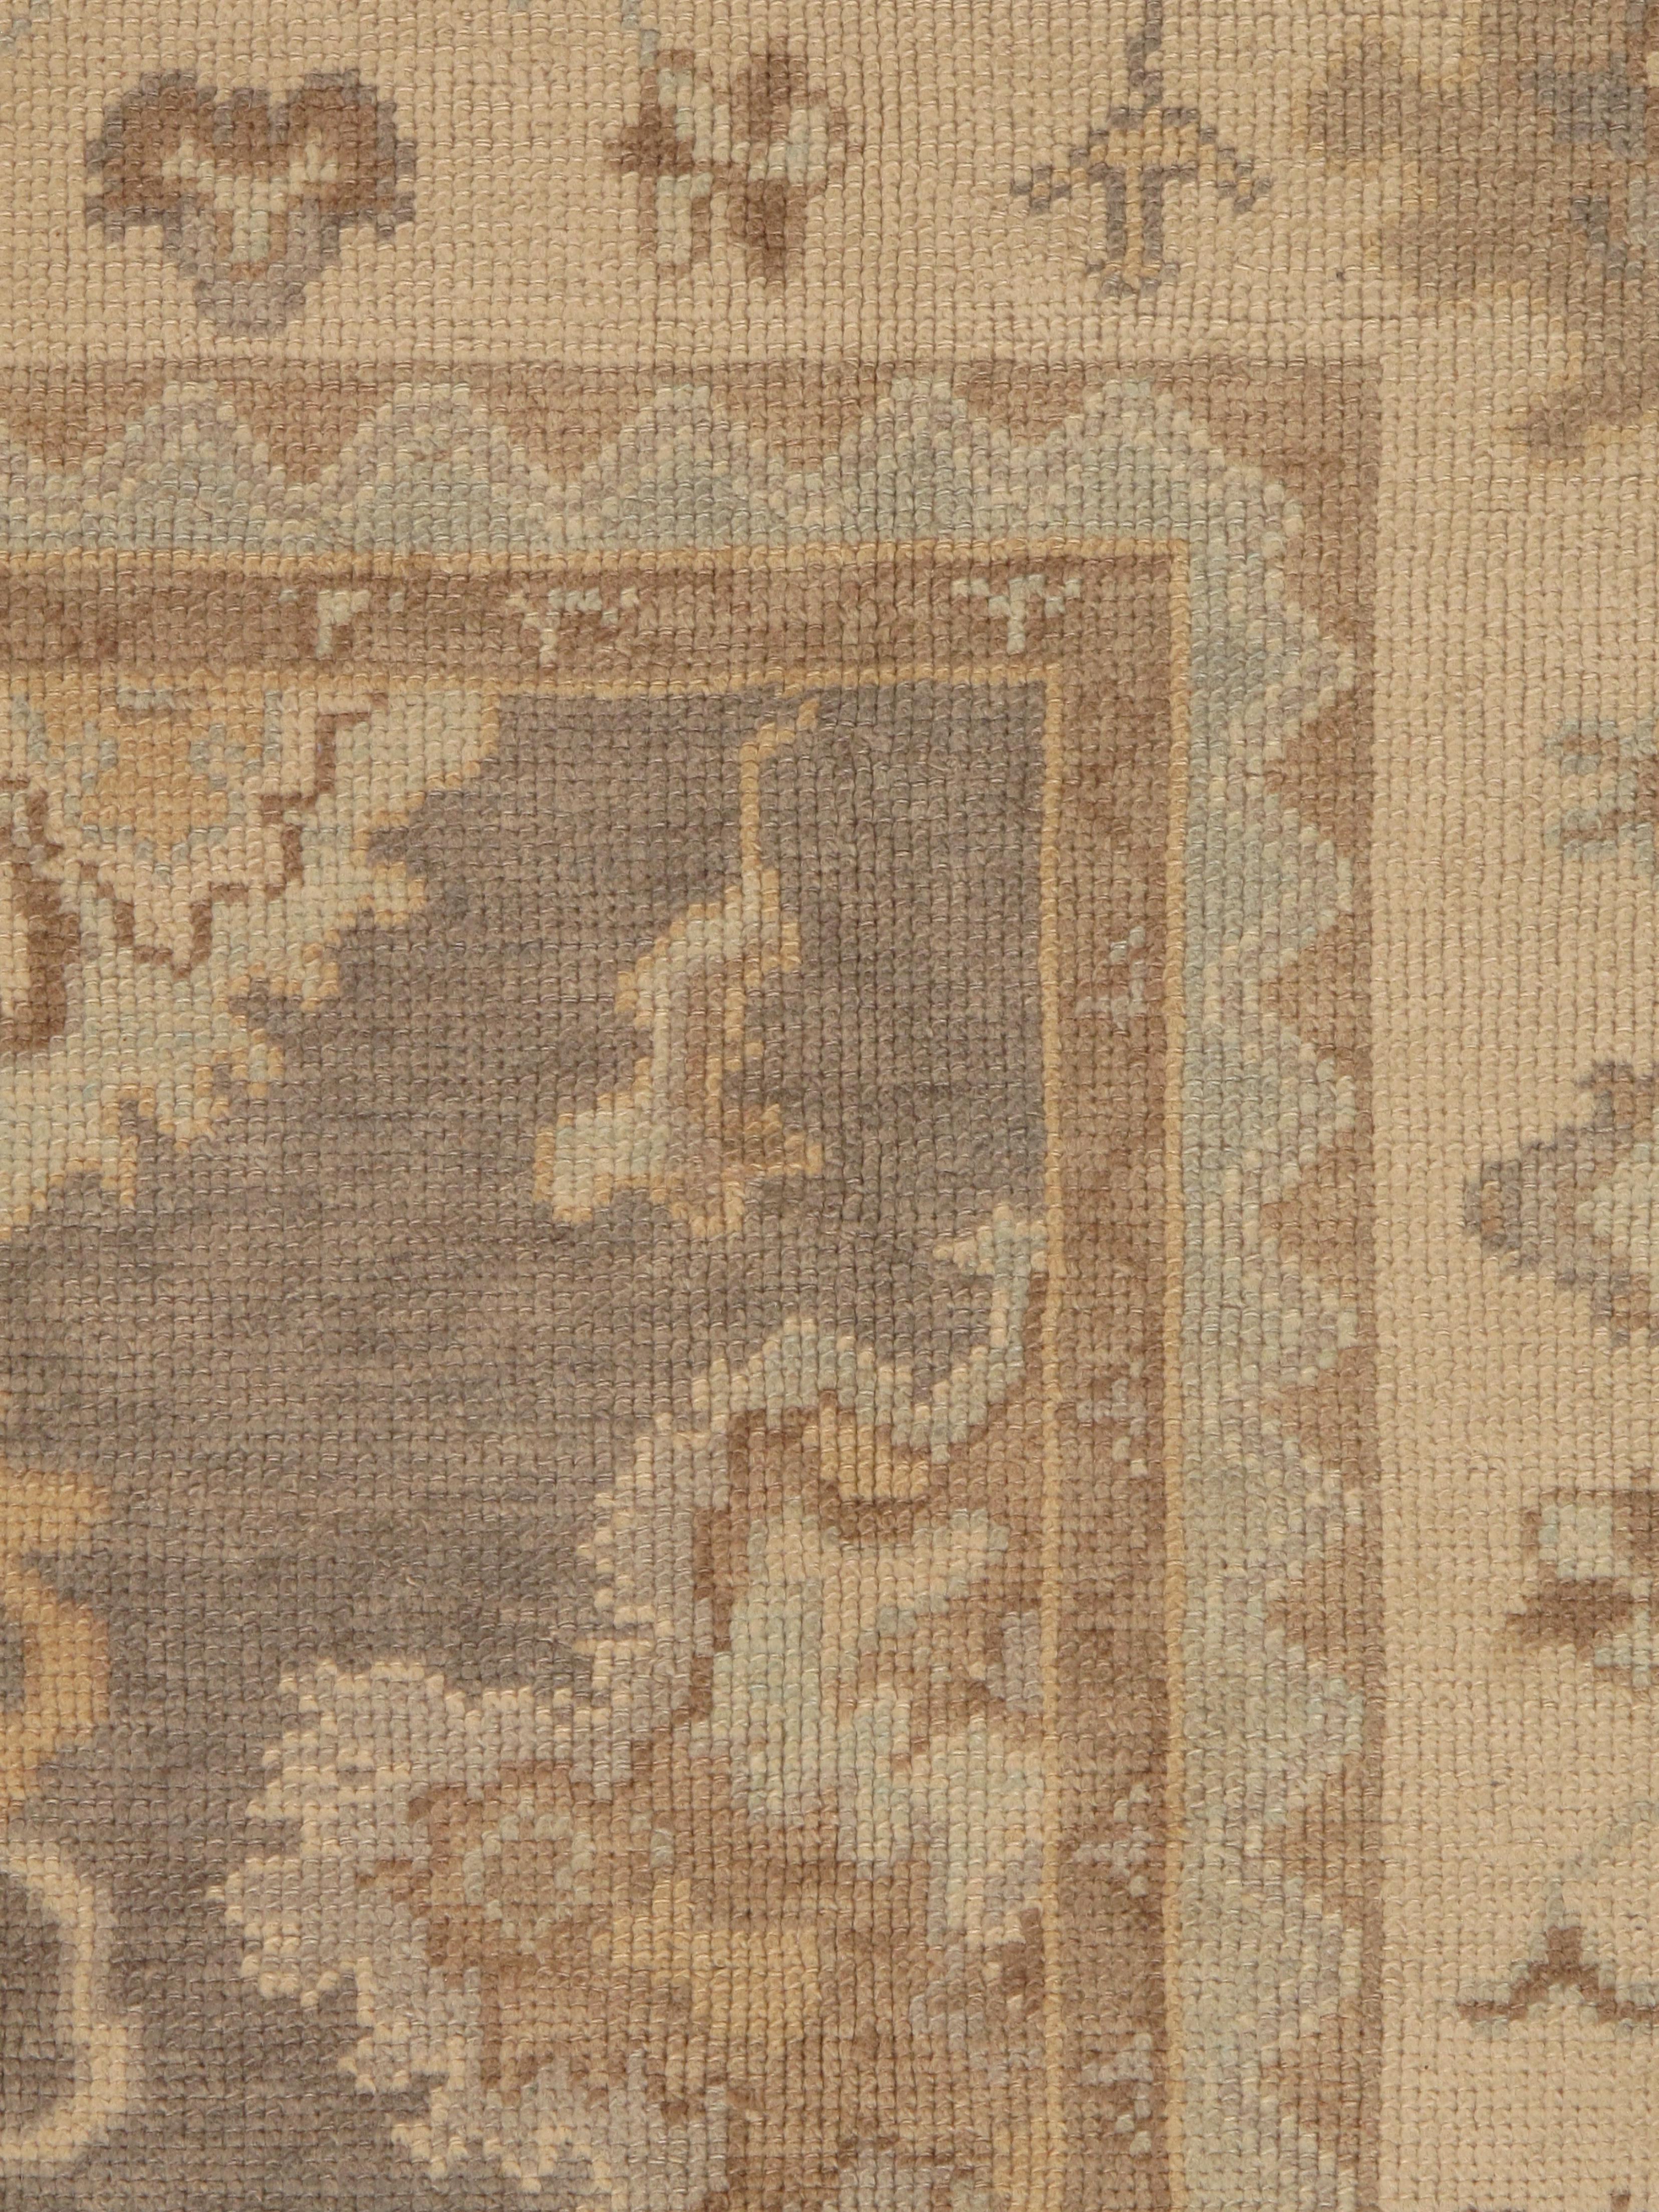 Hand-Knotted Vintage Oushak Carpet, Oriental Rug, Handmade Grey, Ivory, Saffron For Sale